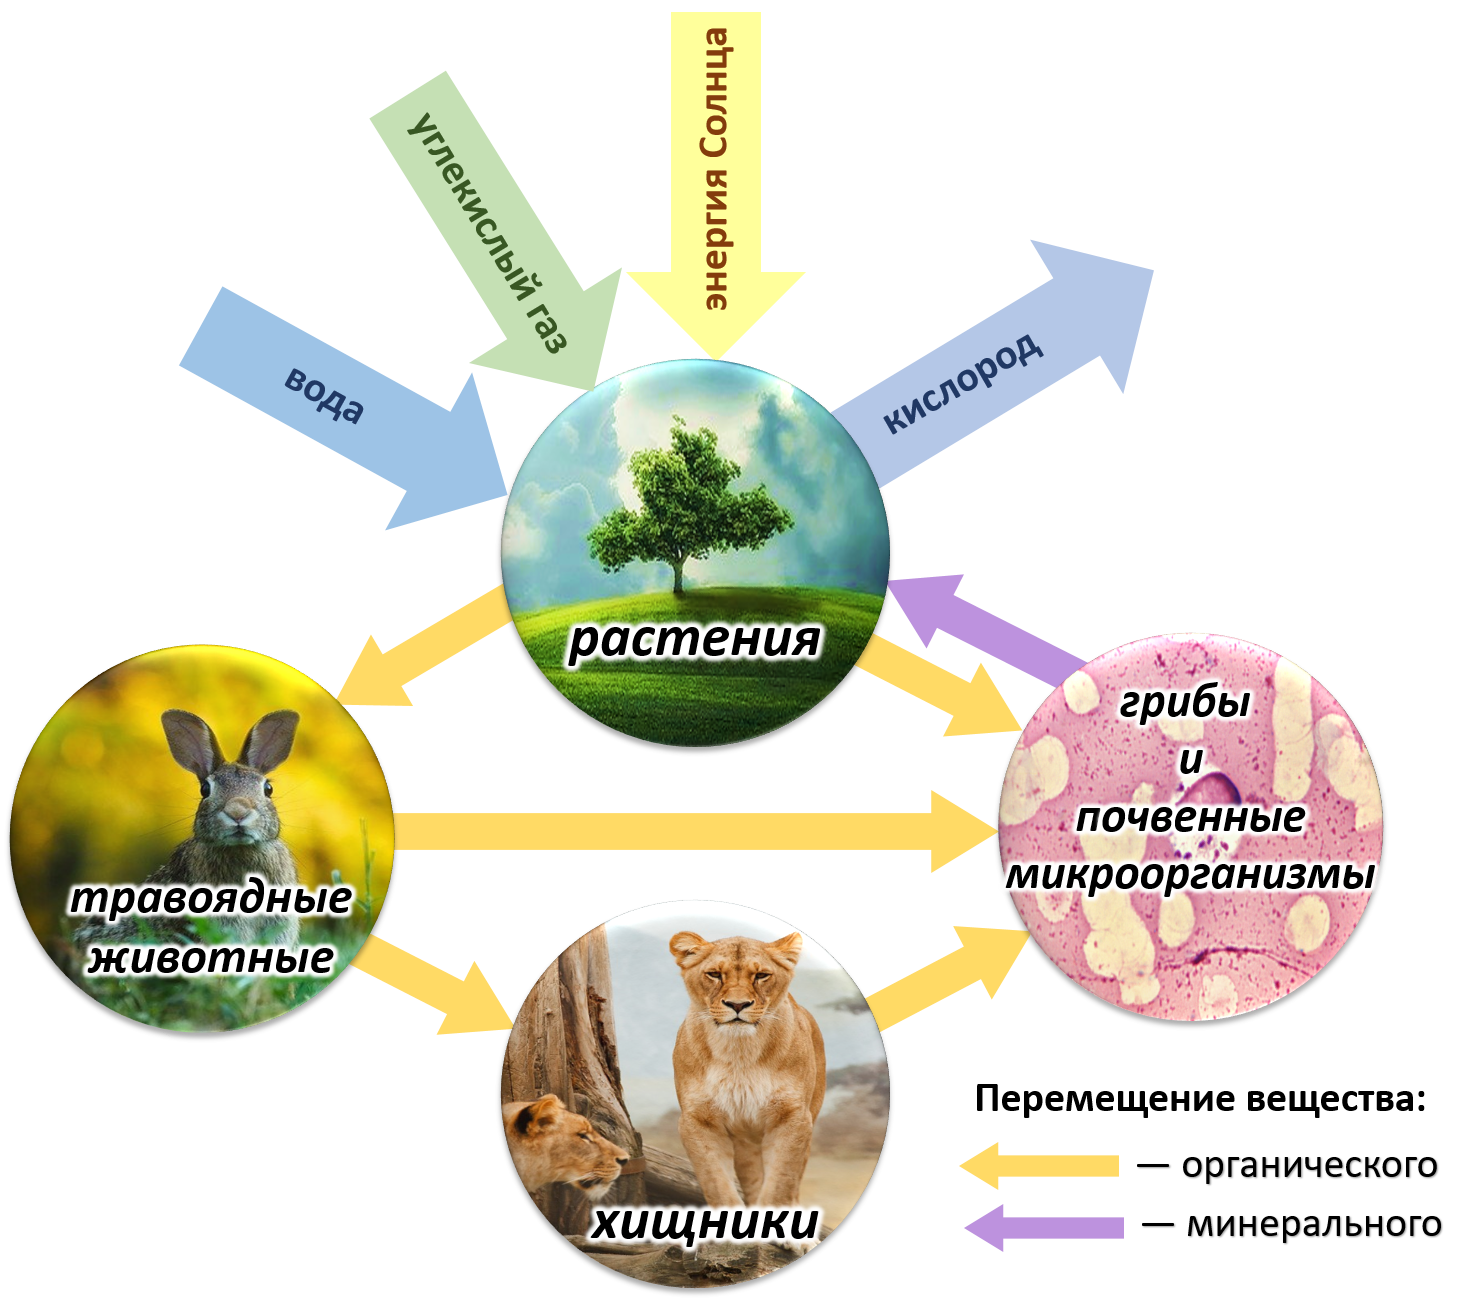 Роль лисы в биологическом круговороте. Биотический круговорот веществ в биосфере. Круговорот веществ и энергии в биосфере схема. Круговорот веществ в природе Биосфера. Схема биологического круговорота в природе.